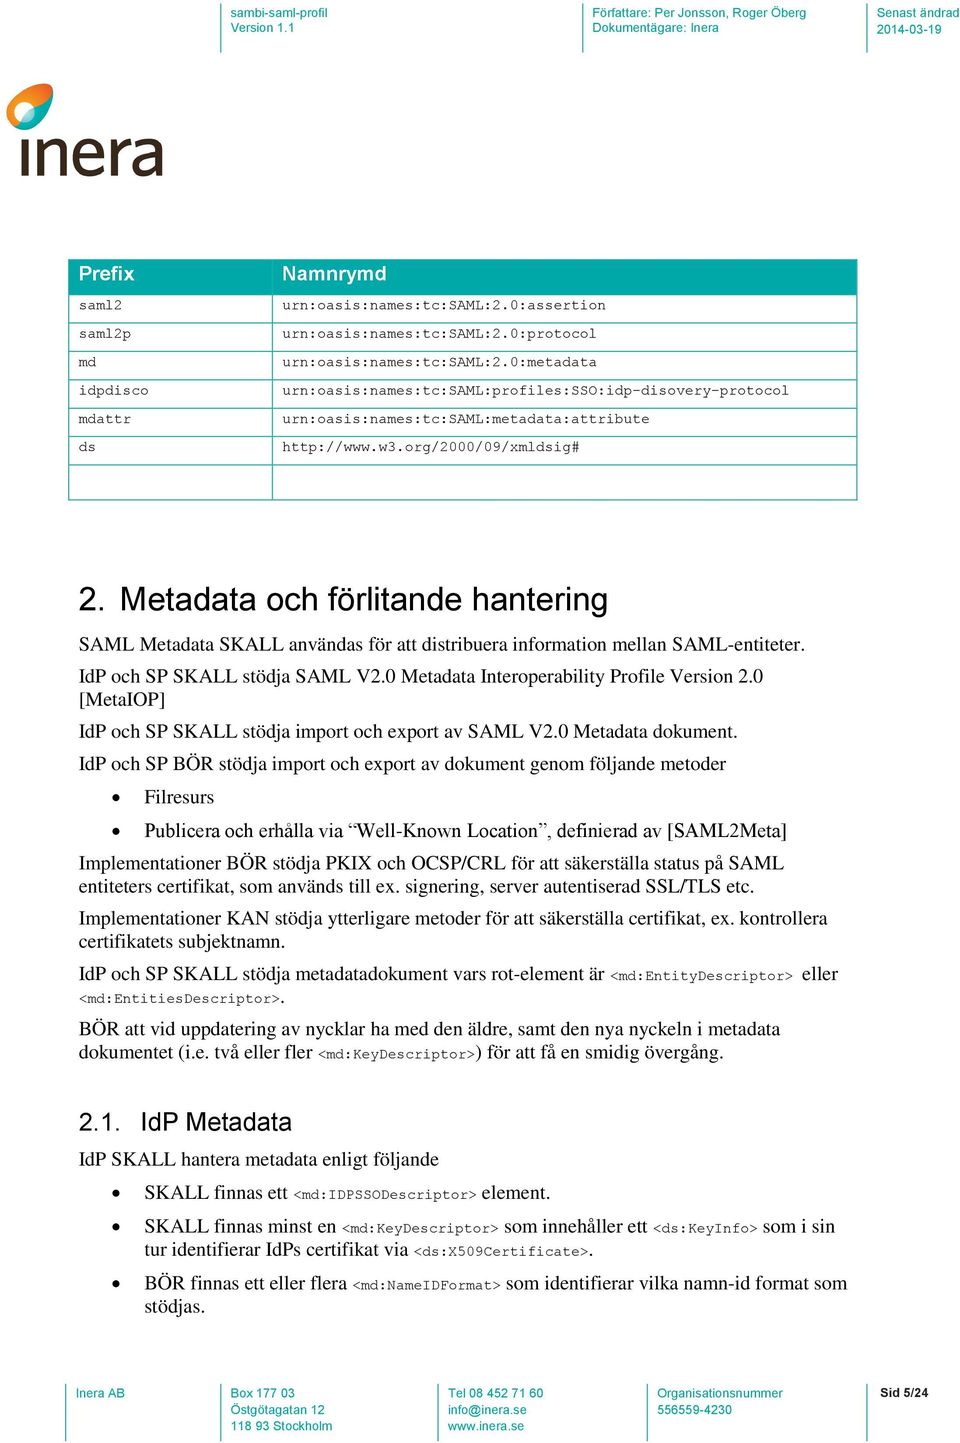 Metadata och förlitande hantering SAML Metadata SKALL användas för att distribuera information mellan SAML-entiteter. IdP och SP SKALL stödja SAML V2.0 Metadata Interoperability Profile Version 2.